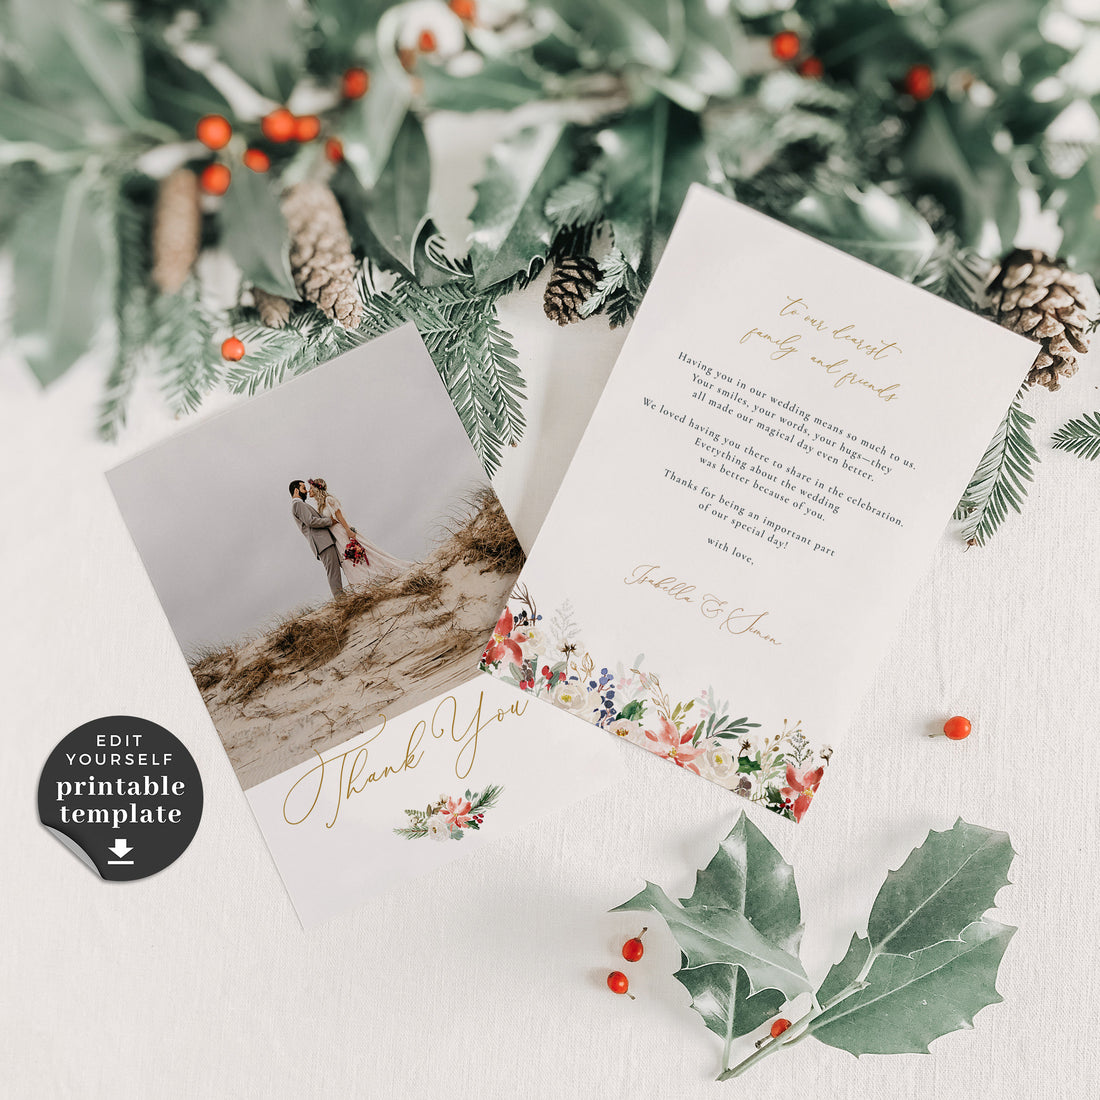 Natalia | Christmas Wedding Thank You Card Template